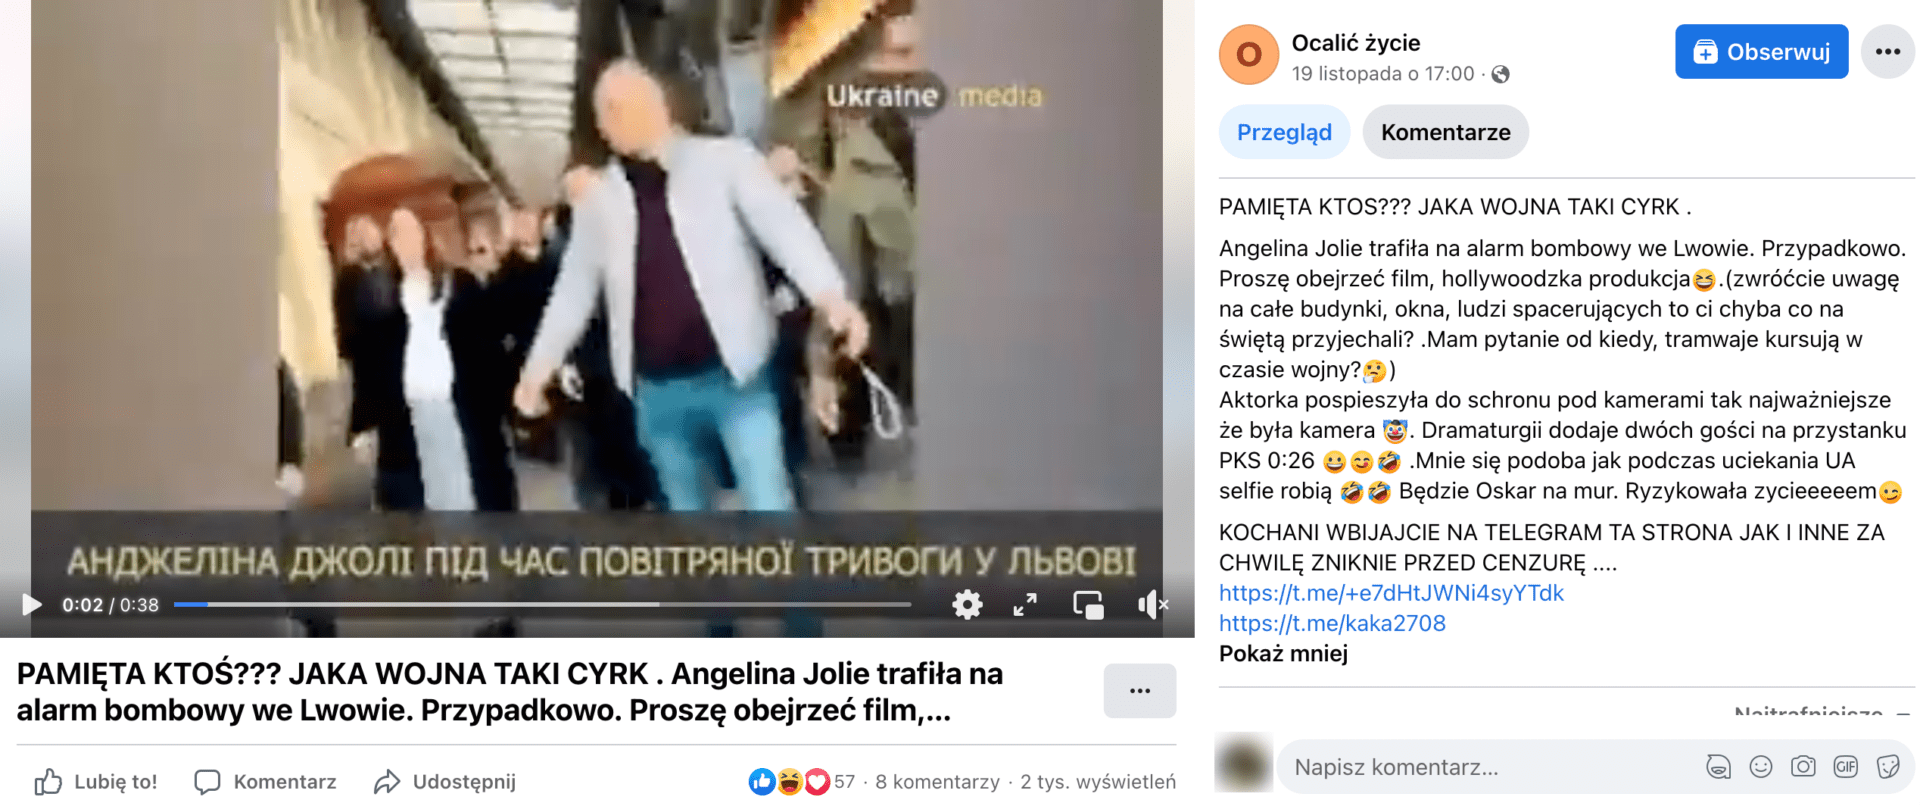 Zrzut ekranu posta, w którym zamieszczono nagranie z Angeliną Jolie. Obraz jest niewyraźny, lecz widoczna jest aktorka i inni ludzie dookoła. Post zdobył ponad 50 reakcji, 8 komentarzy i ponad 2 tys. wyświetleń.